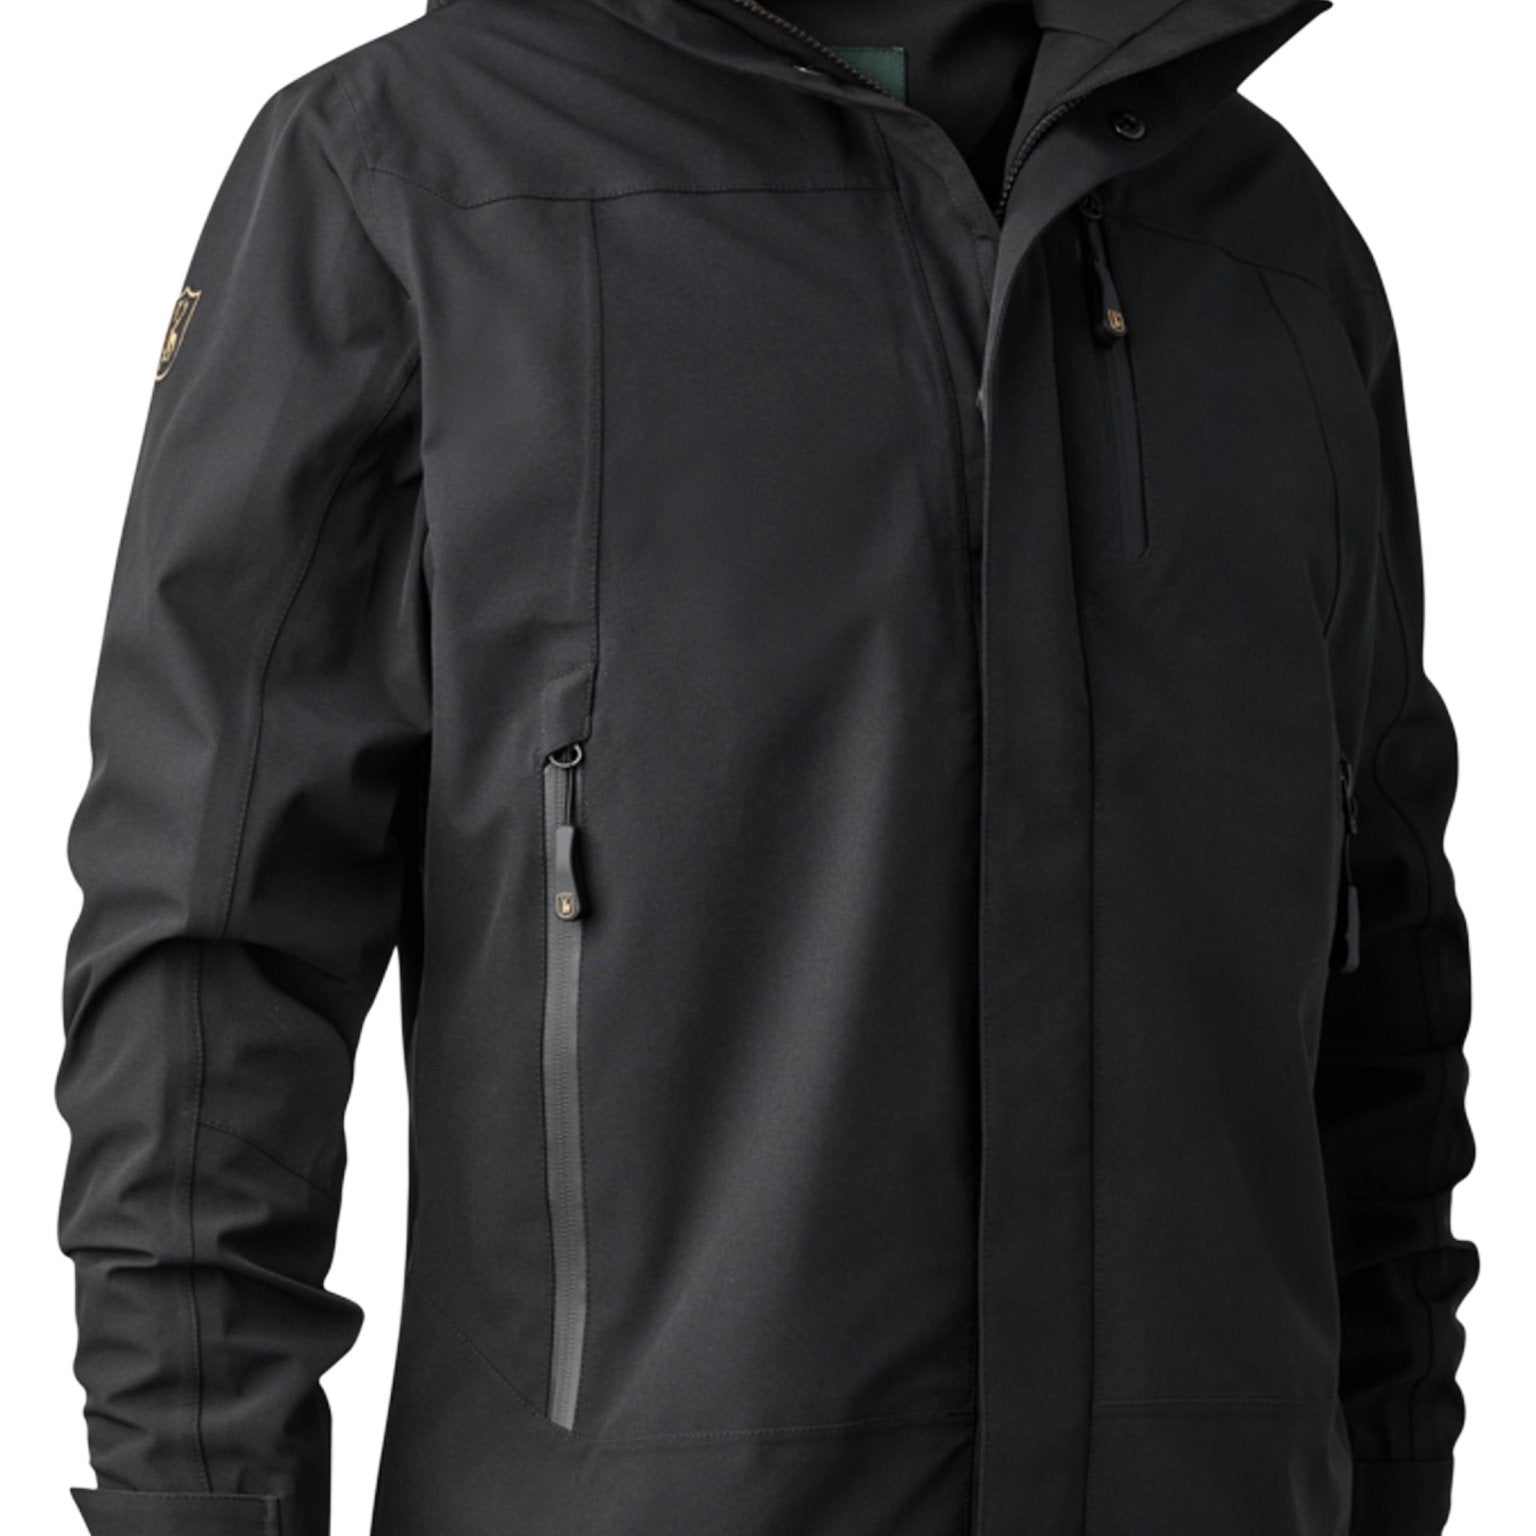 4elementsclothingDeerhunterDeerhunter - Sarek Mens Waterproof & Windproof Jacket with Taped Seams, breathable, 4 way StretchOuterwear5430-999-S